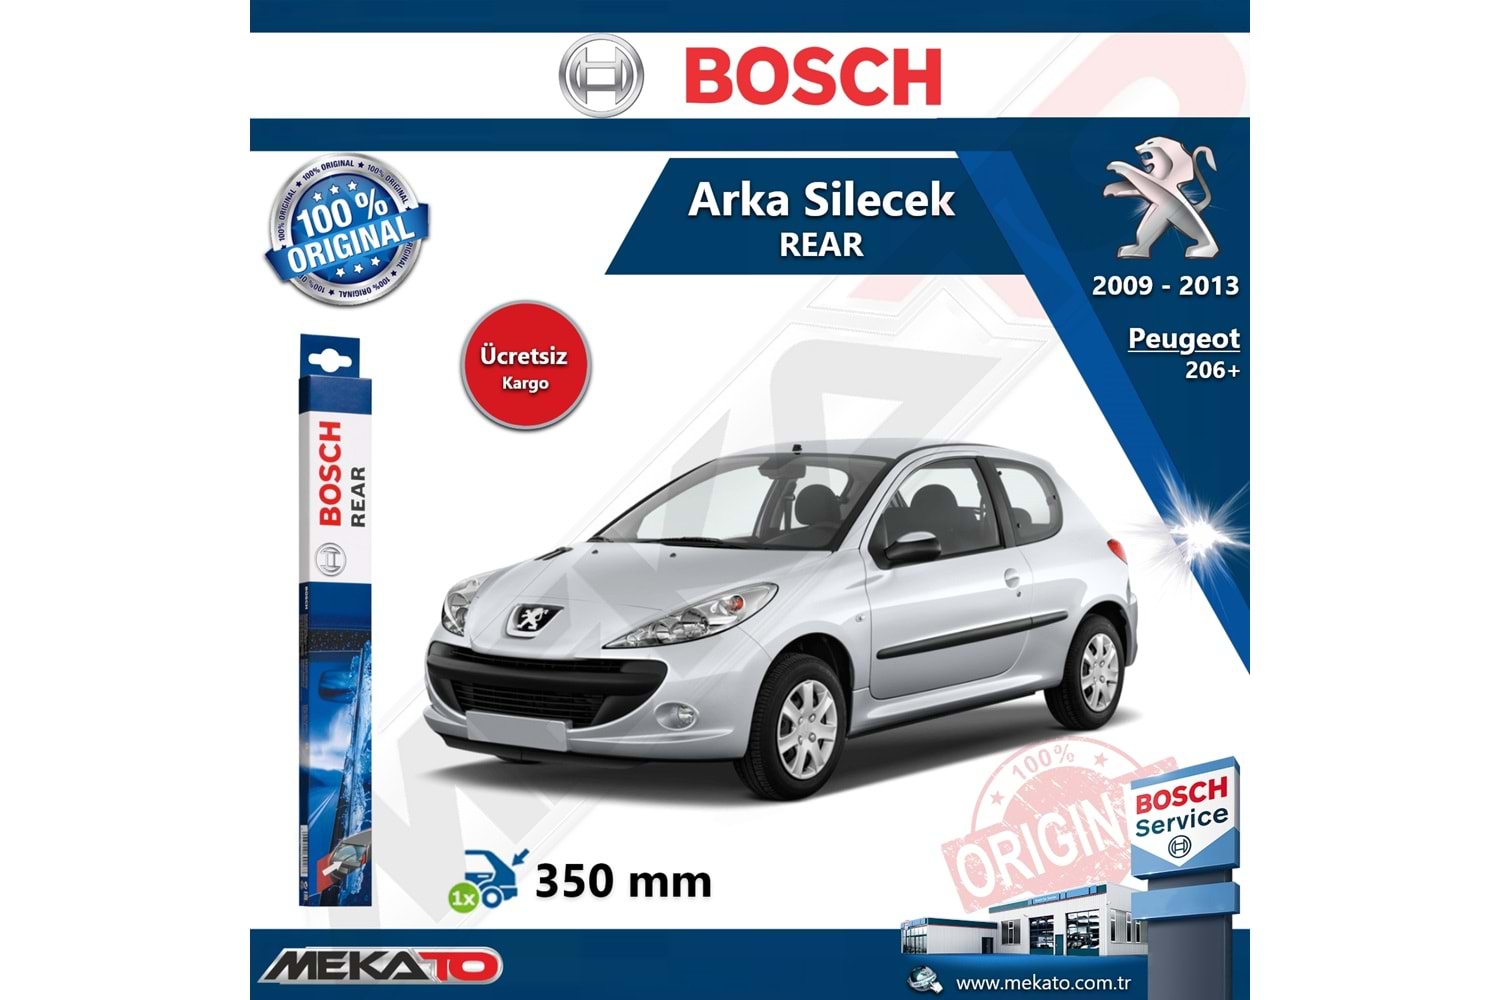 Peugeot 206+ Arka Silecek Bosch Rear 2009-2003